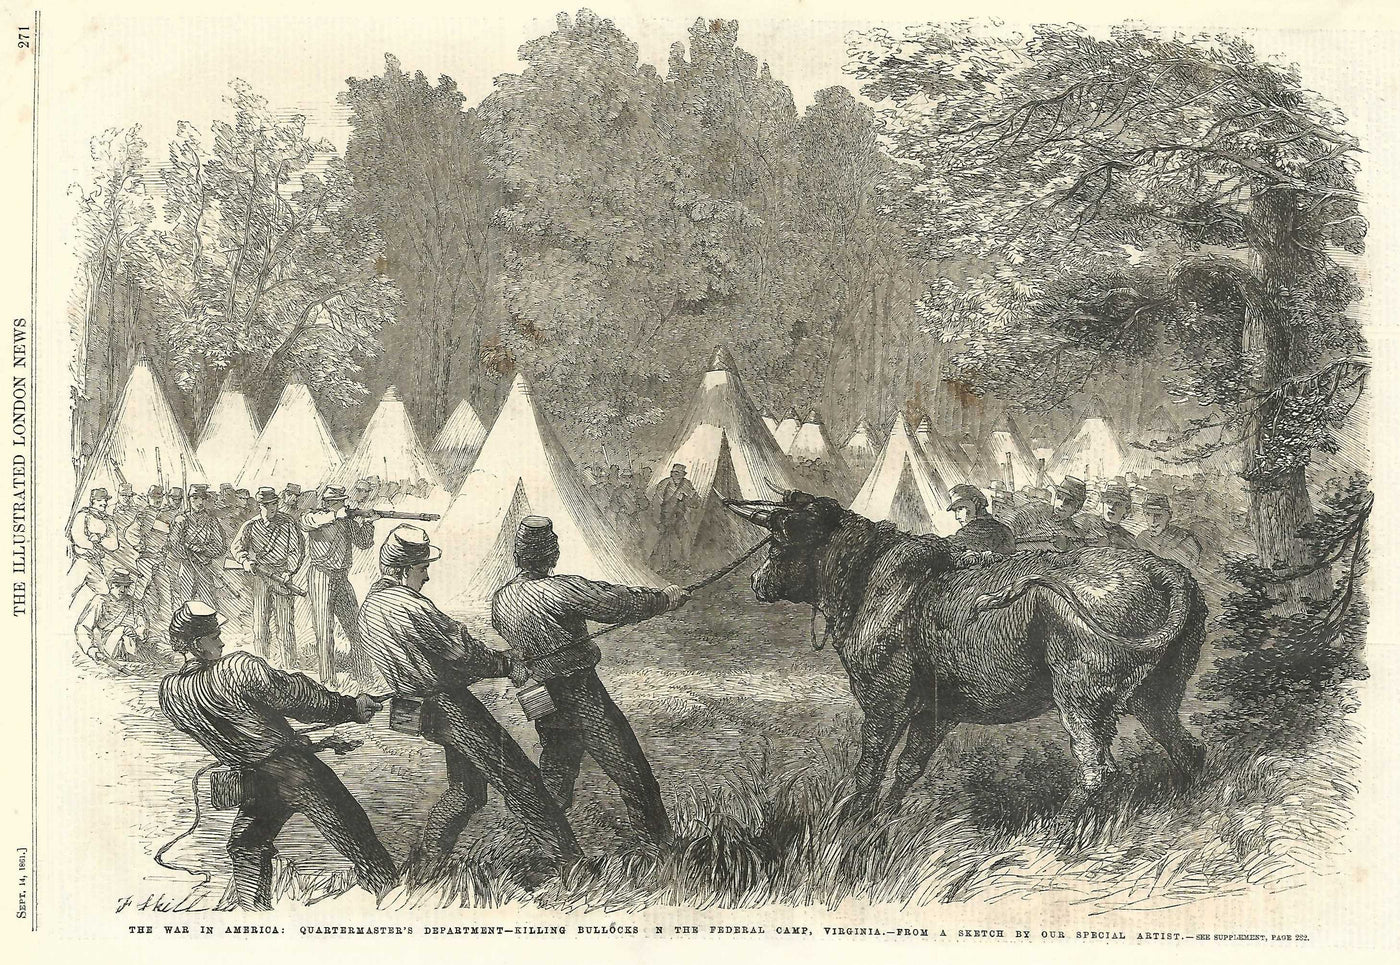 American Civil War Quartermasters killing bullocks in Virginia 1861